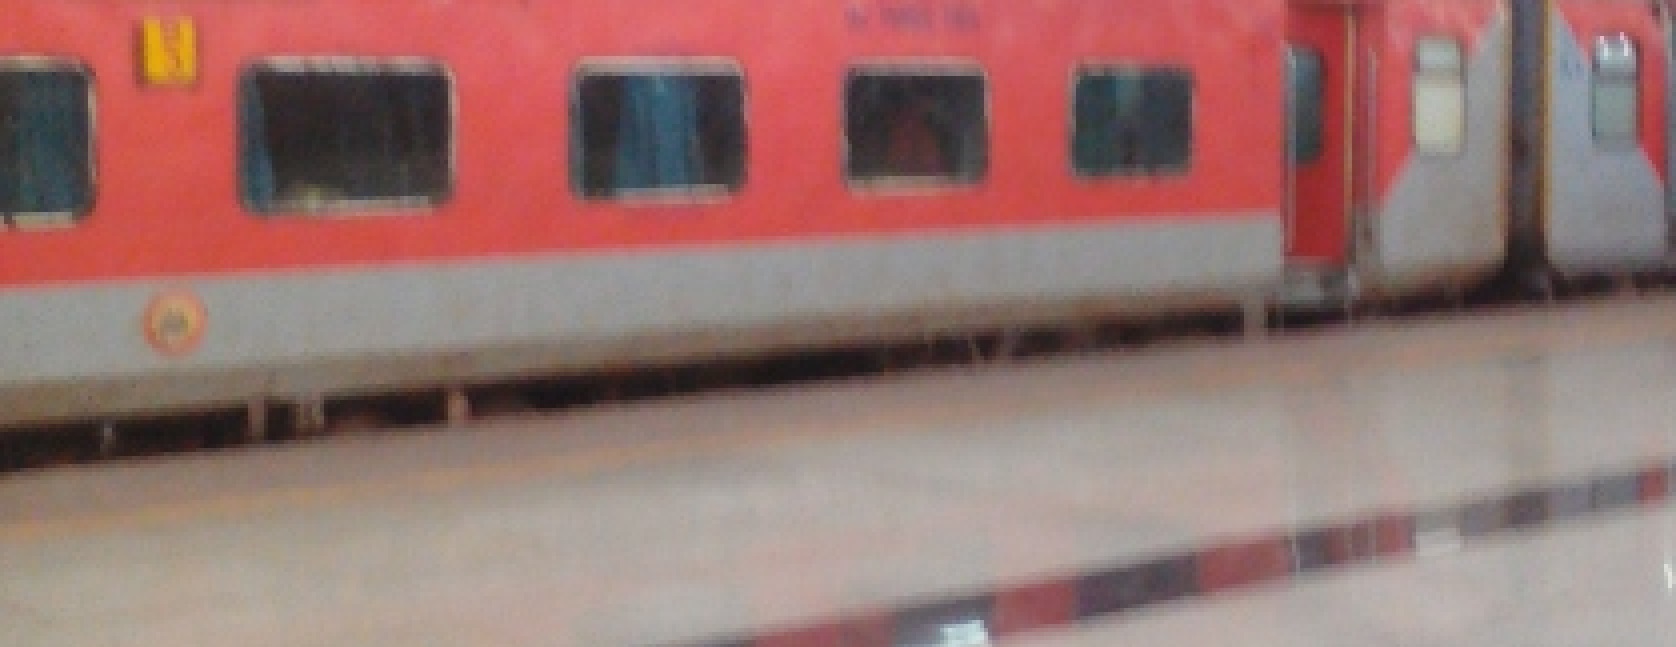 Reaching Mumbai by Train